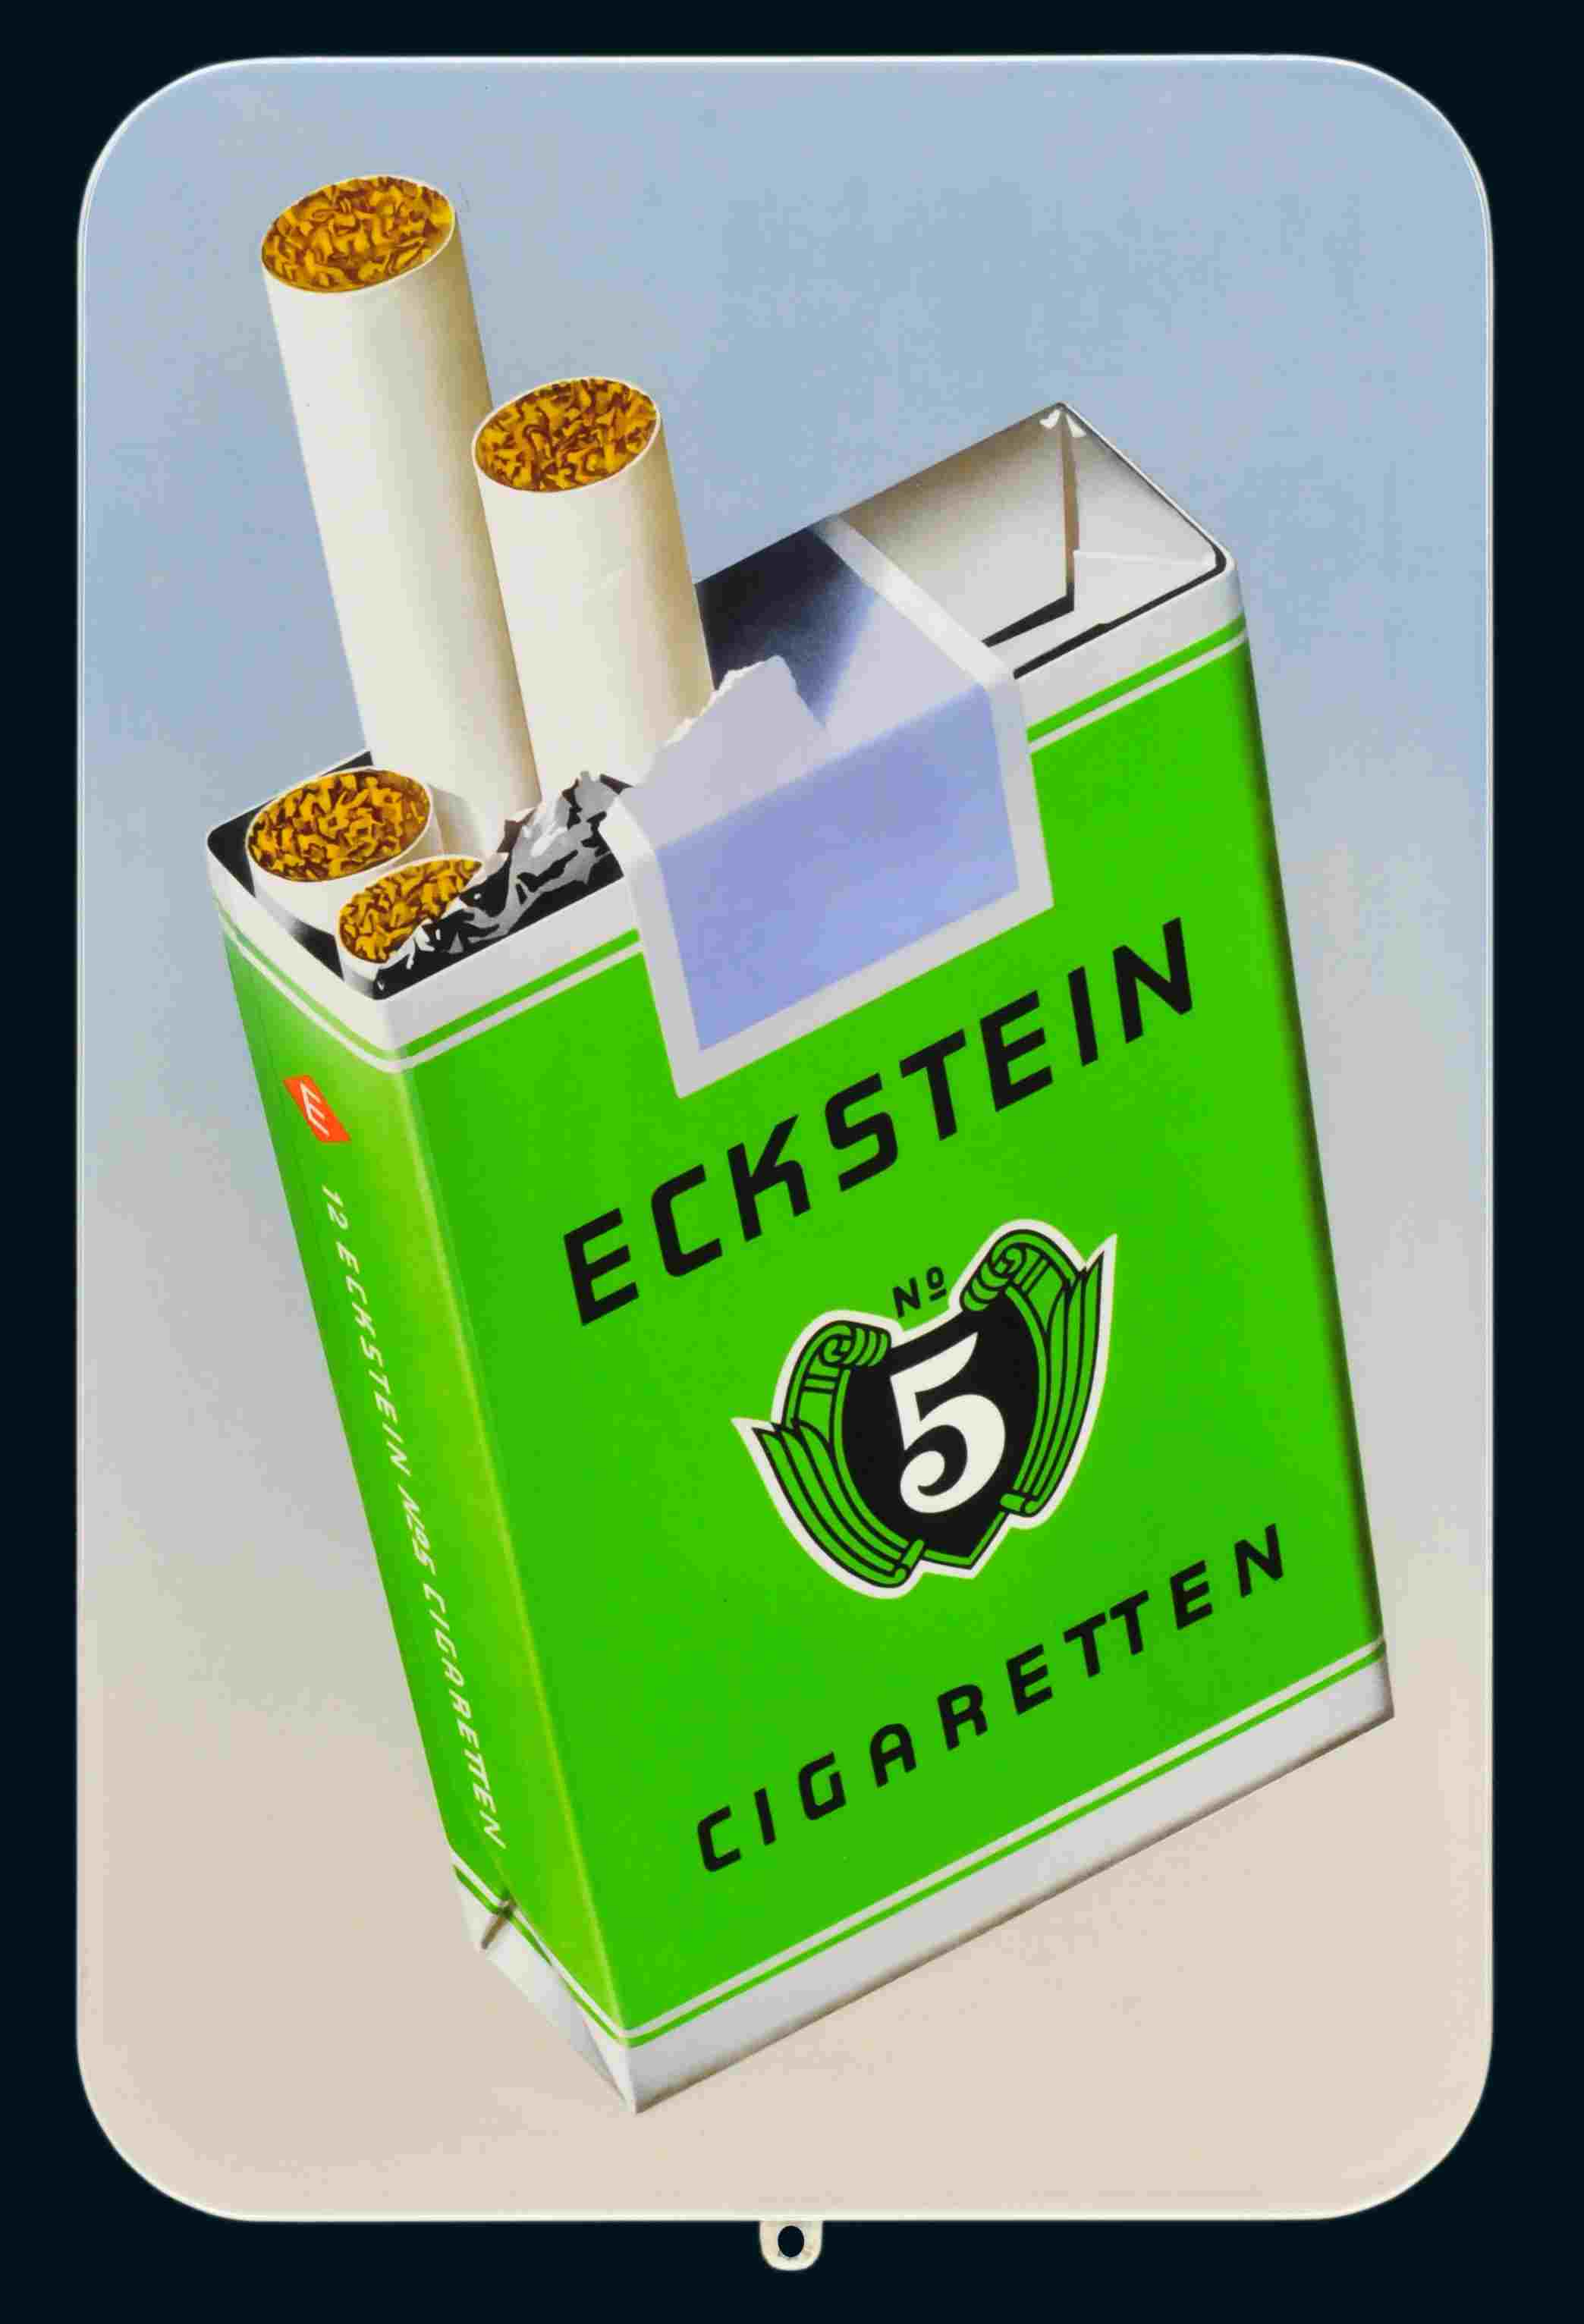 Eckstein Cigaretten No. 5 